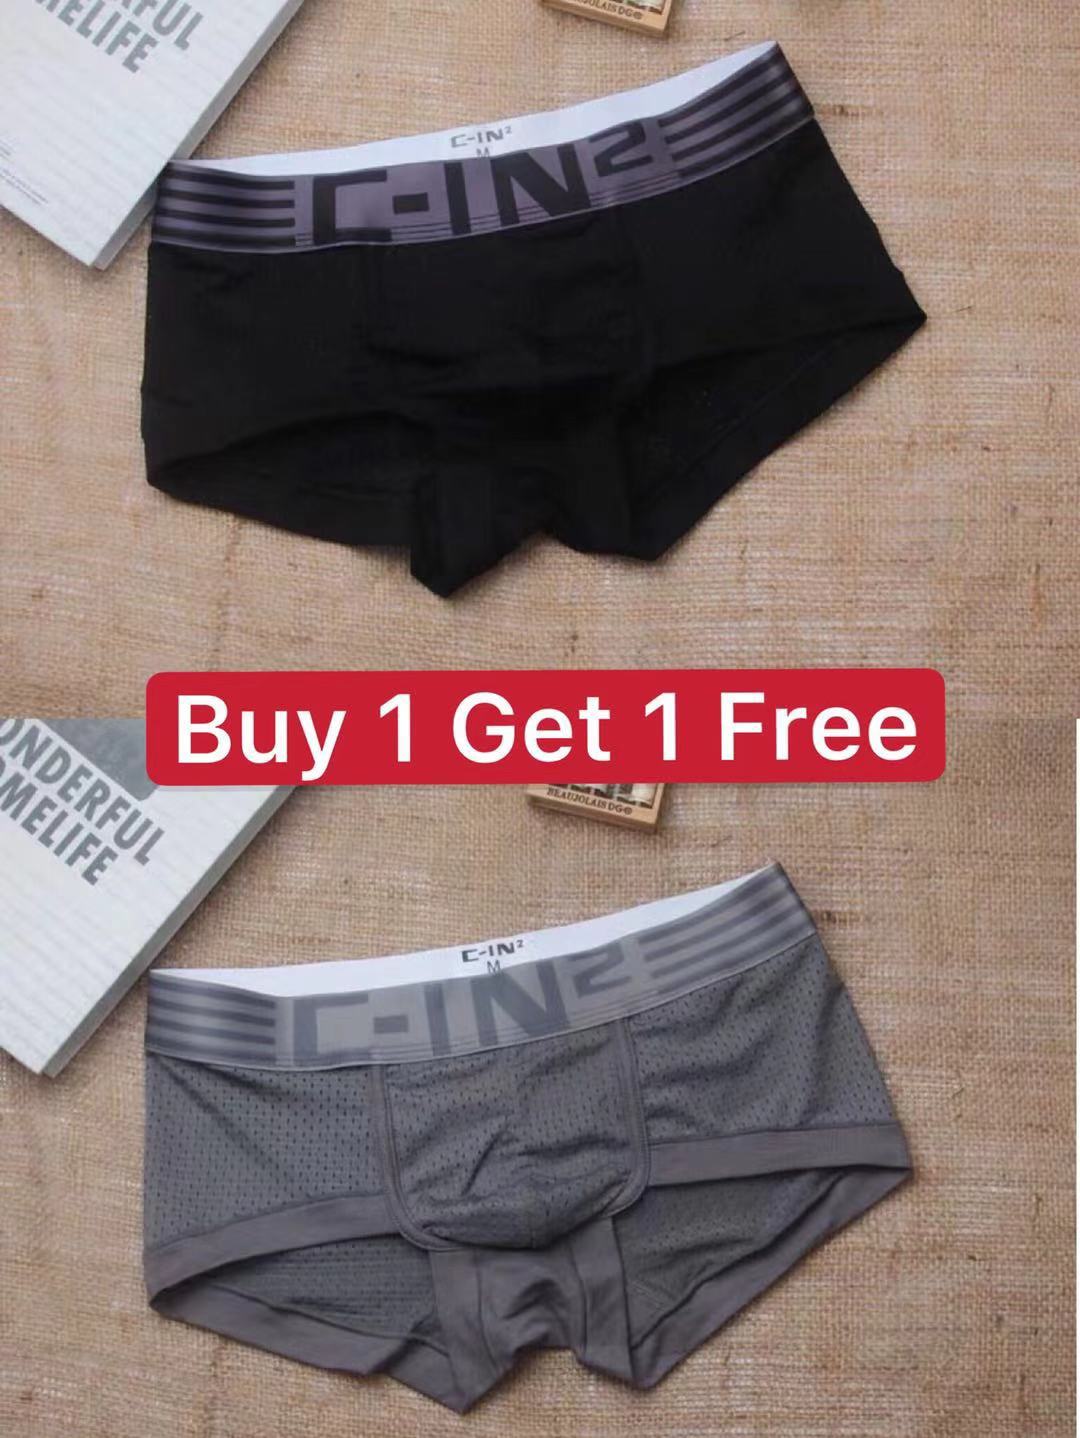 (buy 1 get 1 free )C-IN2 กางเกงในชายboxer ผ้าตะข่ายพานิ่มใส่สบาย